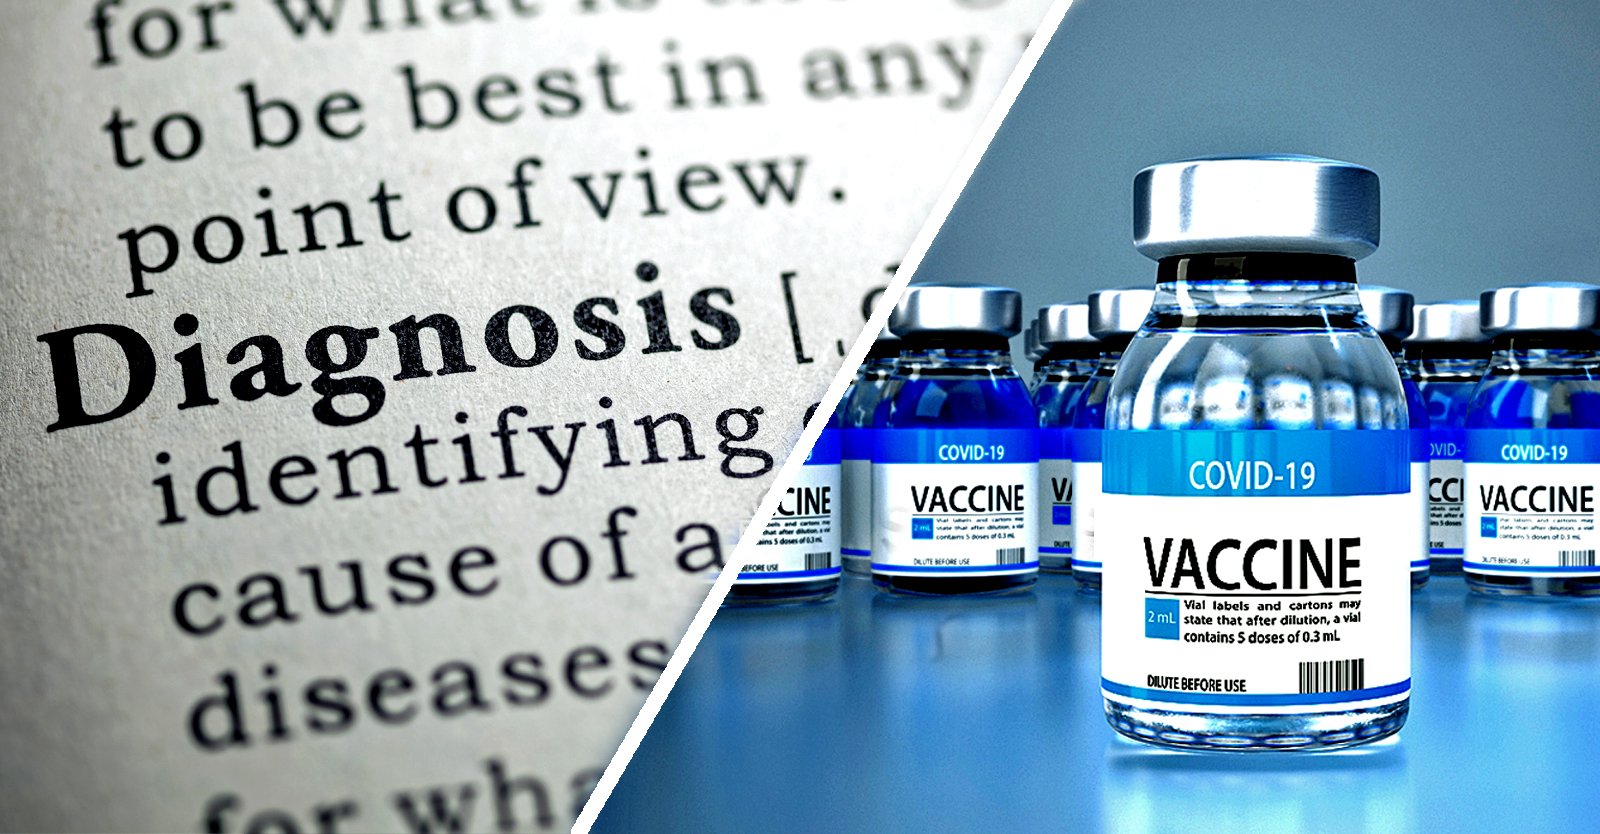 Secondo il sondaggio di Zogby, al 15% degli adulti americani è stata diagnosticata una nuova malattia dopo il vaccino COVID